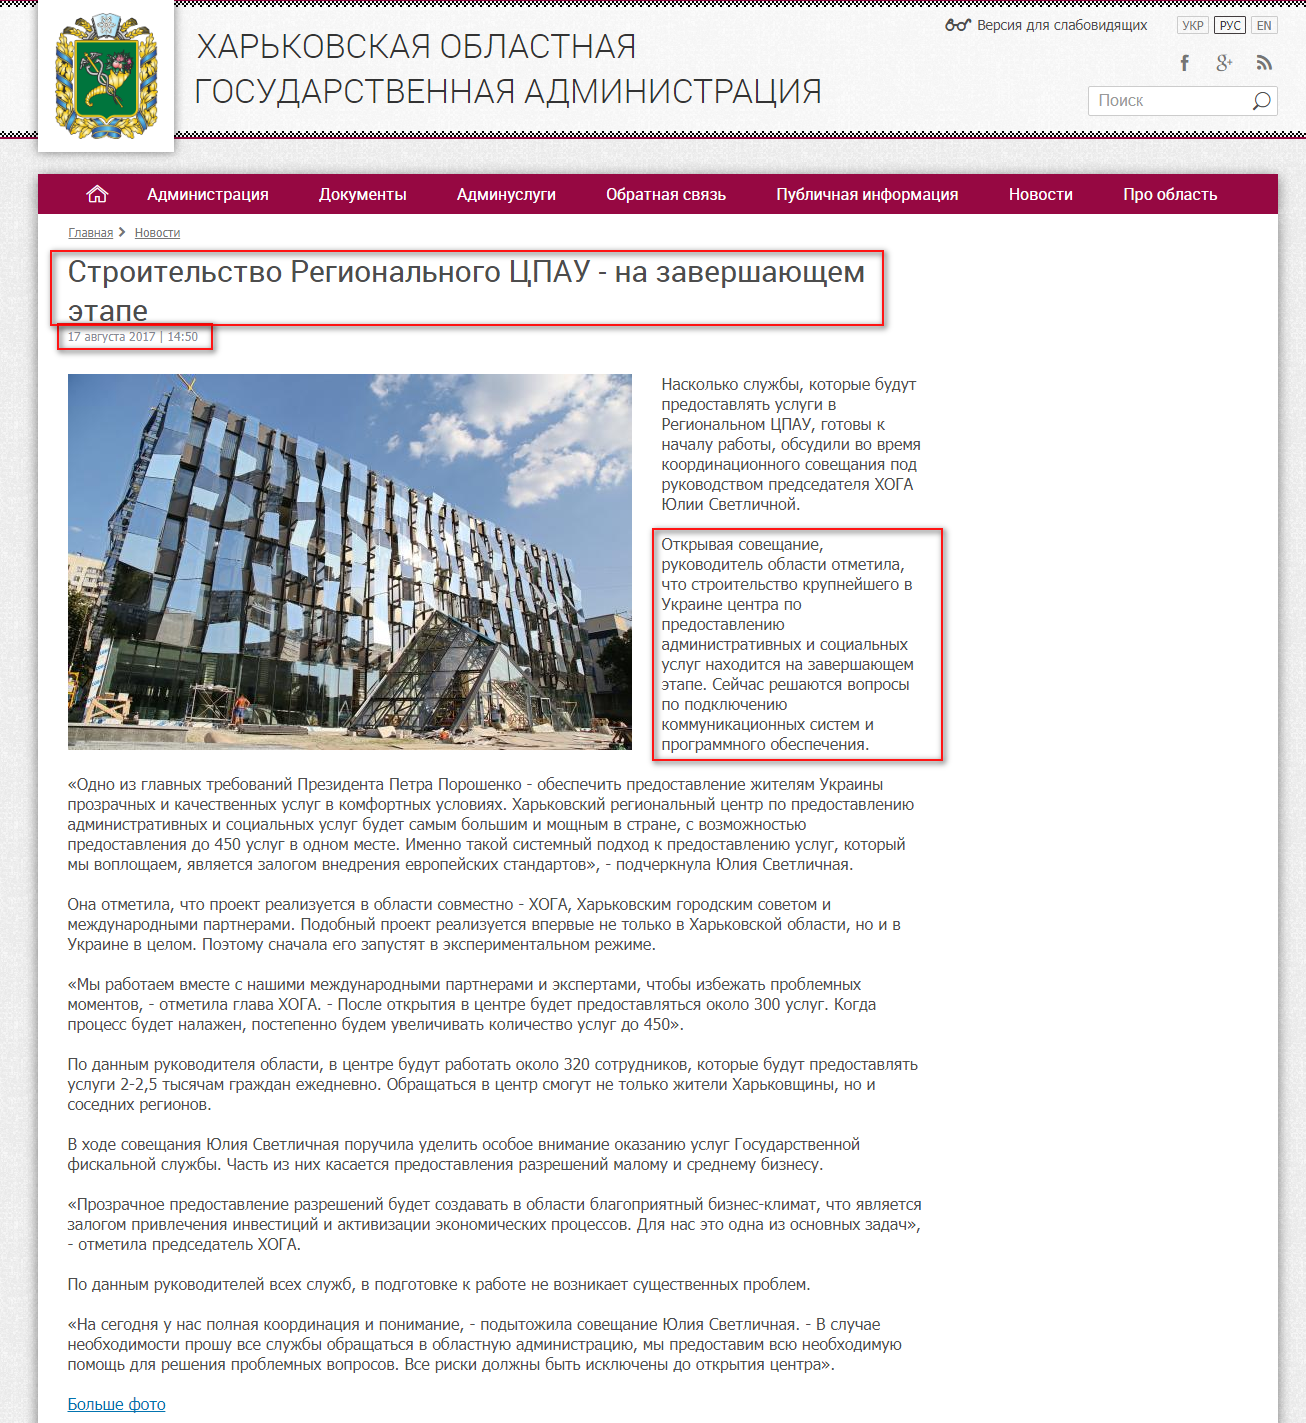 http://kharkivoda.gov.ua/ru/news/88094